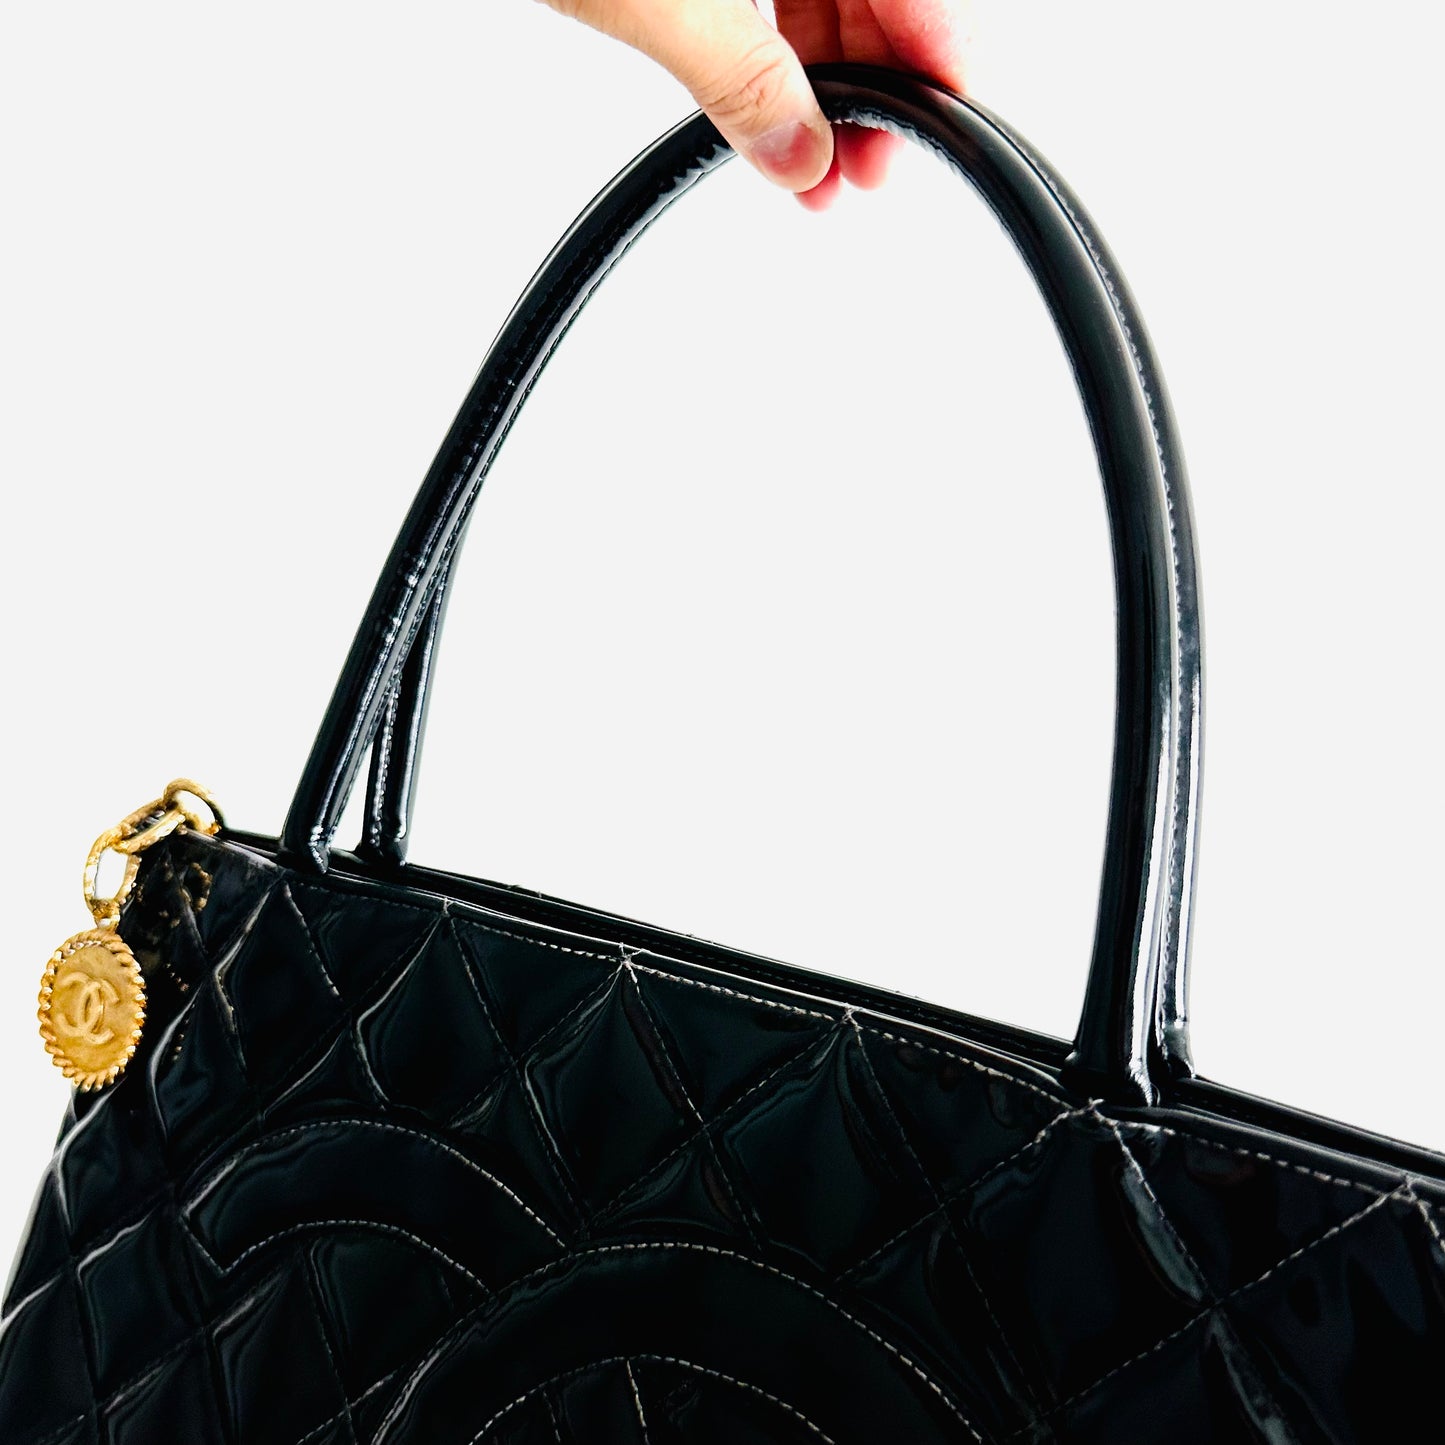 Chanel Black GHW Medallion Giant CC Monogram Logo Quilted Patent Shoulder Shopper Tote Bag 7s